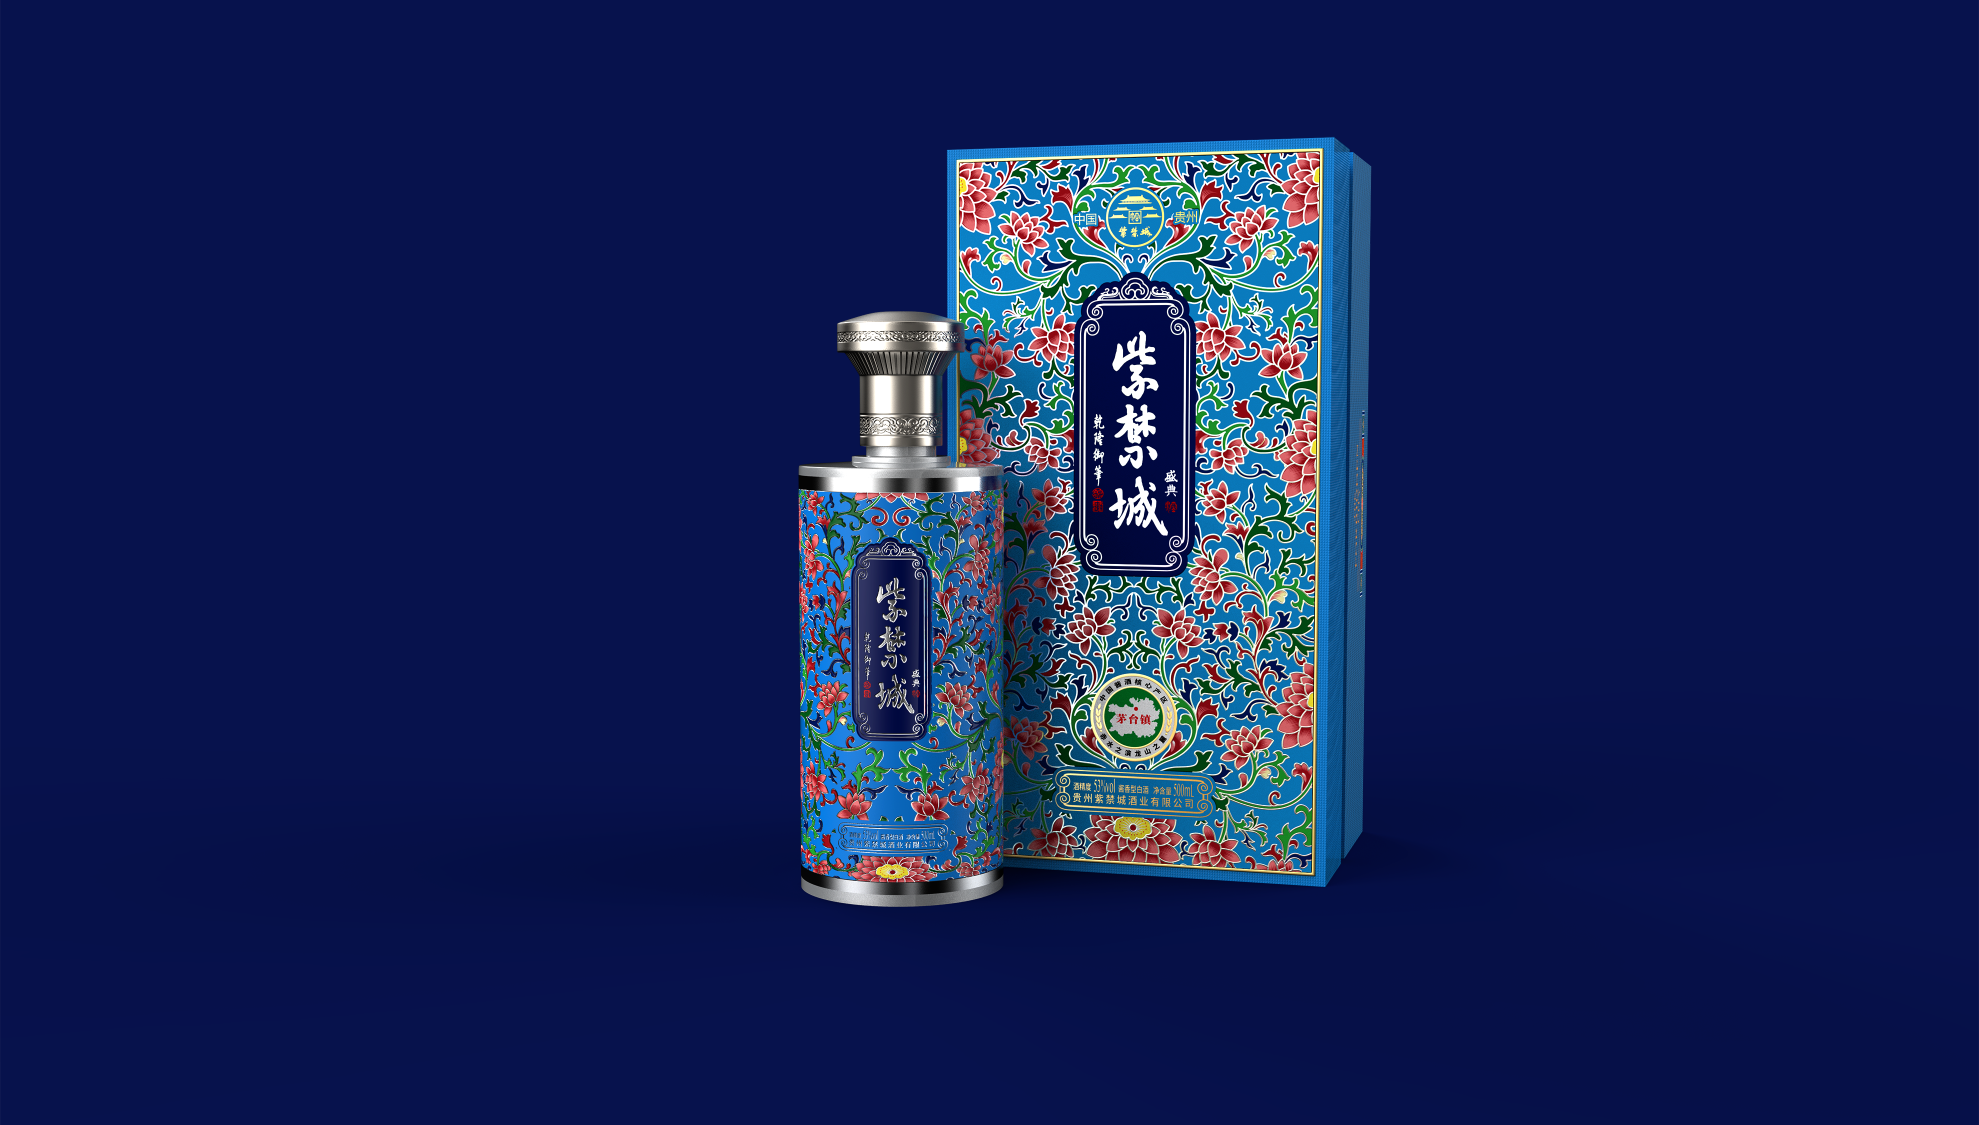 白酒包装盒设计 — 紫禁城•盛典